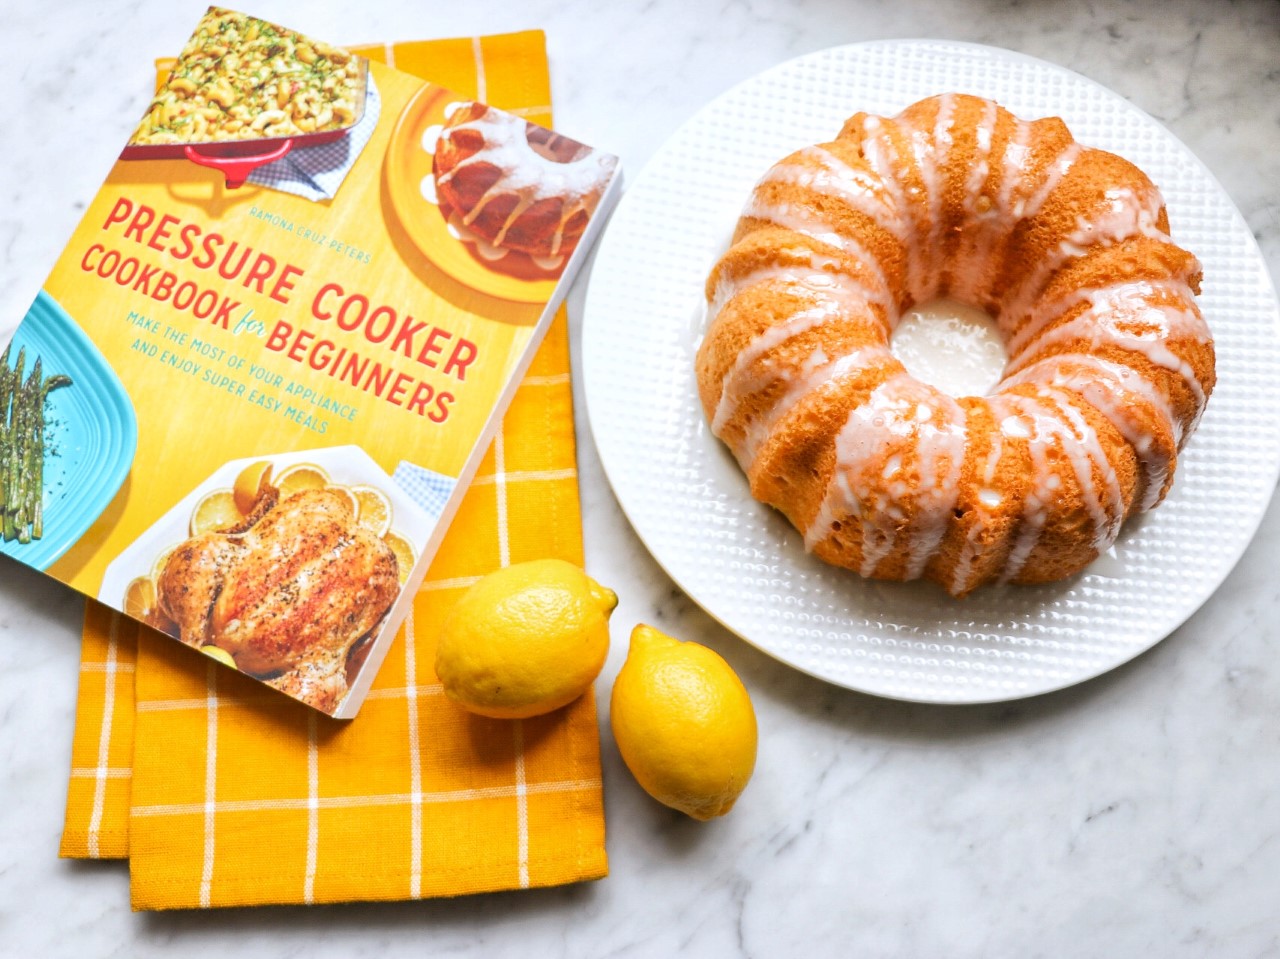 Lemon Bundt Cake recipe from Pressure Cooker Cookbook for Beginners